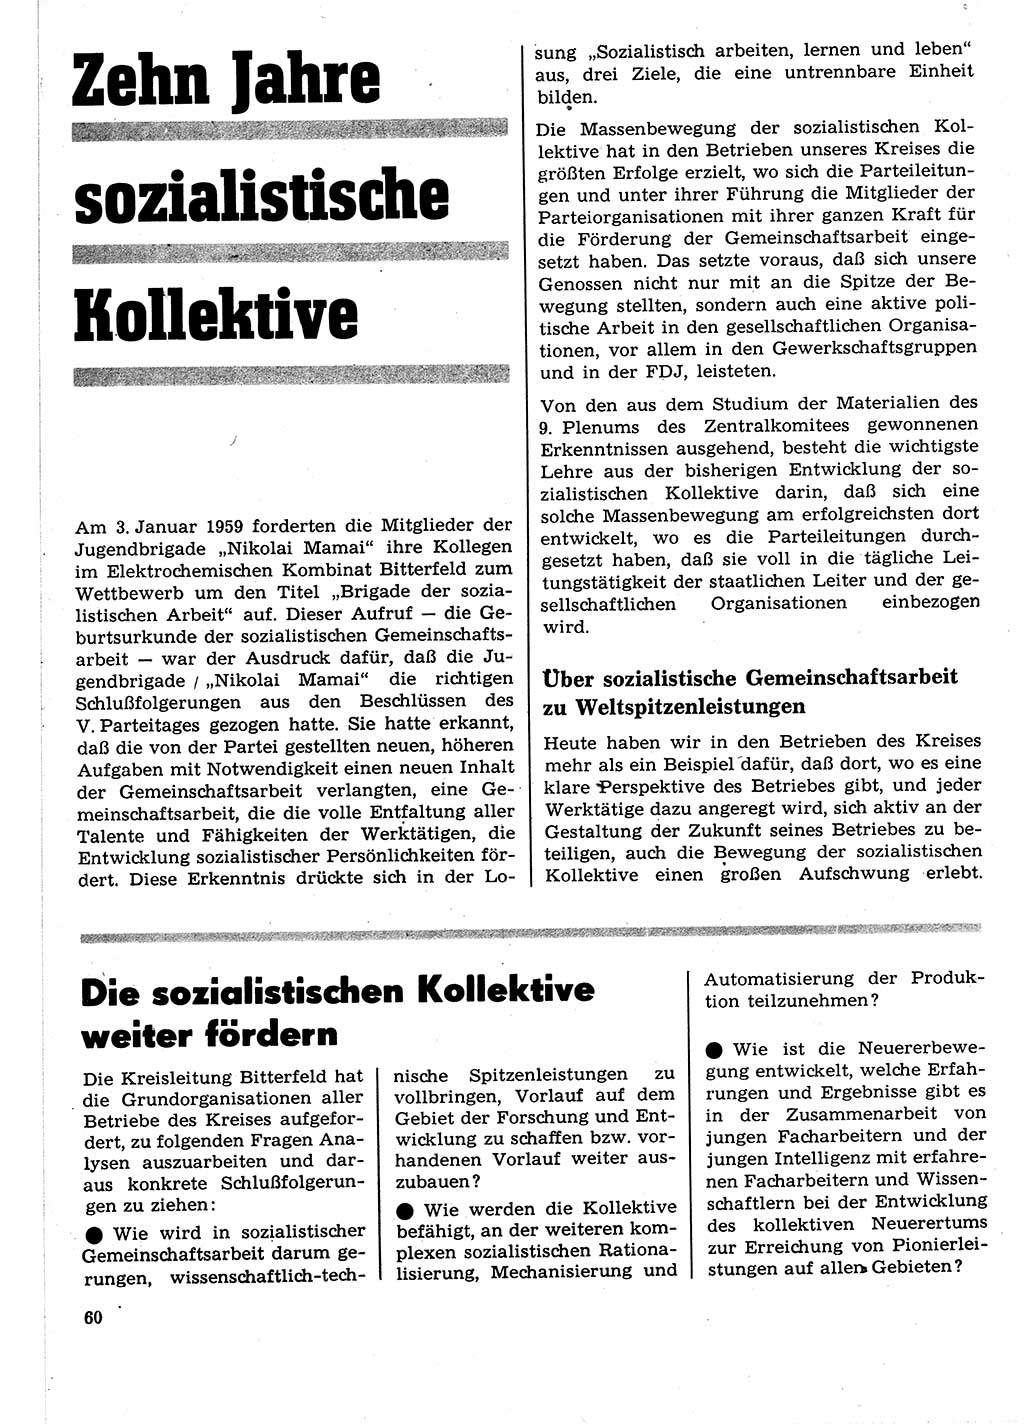 Neuer Weg (NW), Organ des Zentralkomitees (ZK) der SED (Sozialistische Einheitspartei Deutschlands) für Fragen des Parteilebens, 24. Jahrgang [Deutsche Demokratische Republik (DDR)] 1969, Seite 60 (NW ZK SED DDR 1969, S. 60)